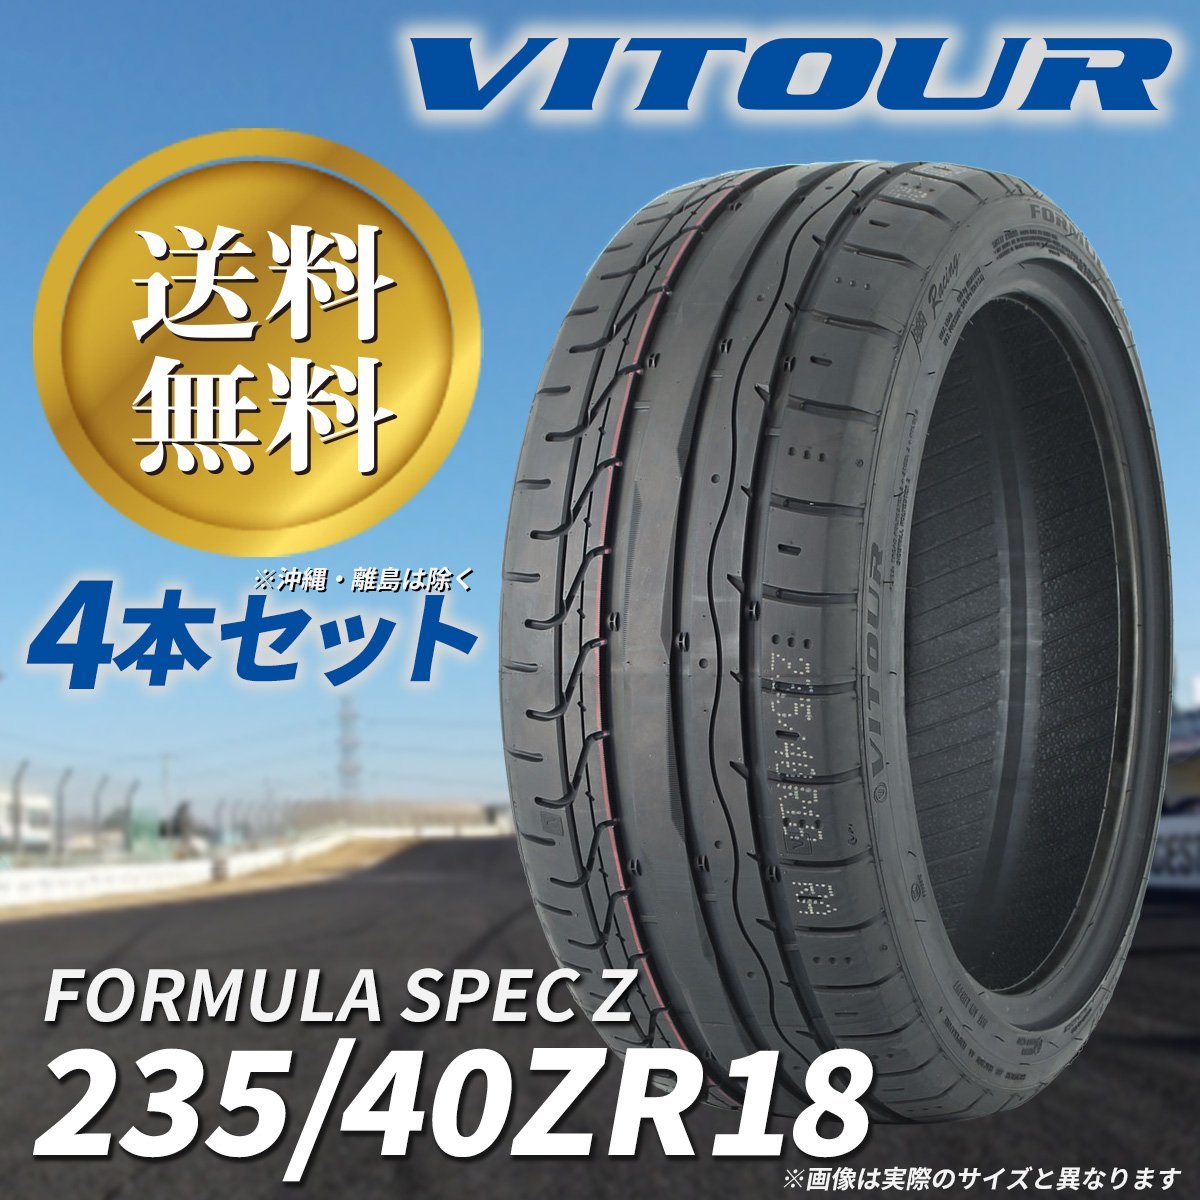 送料無料 ☆ VITOUR TIRE FORMULA SPEC Z 235/40ZR18 タイヤ ヴィツァー 新品 未使用 4本セット 18インチ ラジアルタイヤ ☆_写真のサイズとは異なります。